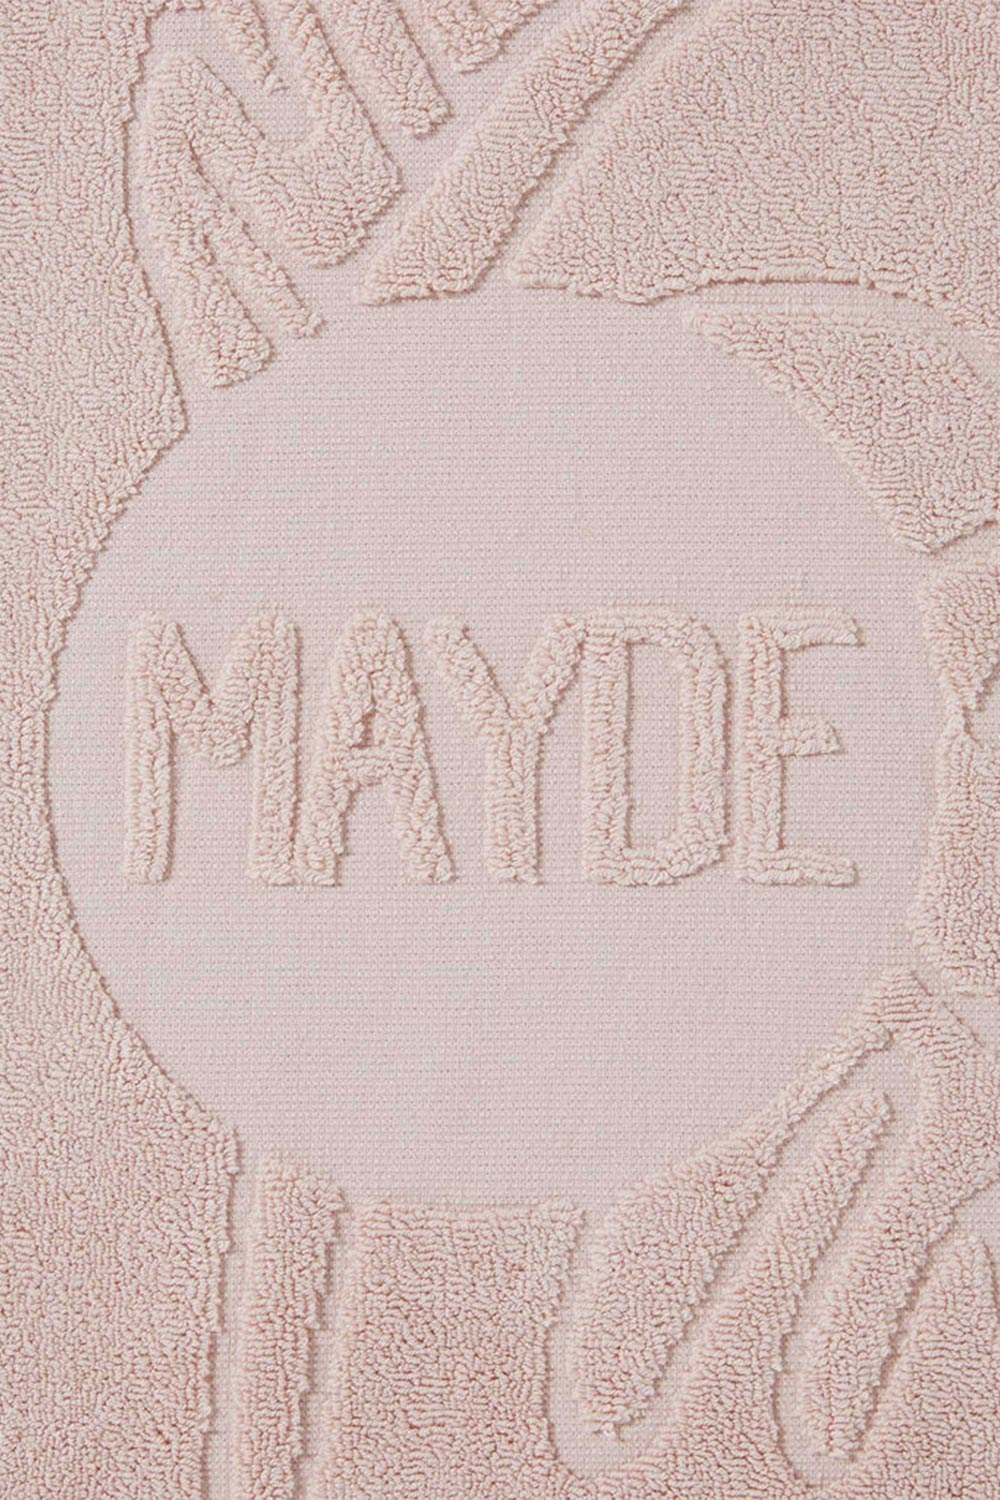 Mayde Beach Towels | Mayde Daintree Beach Towel - Dusty Rose